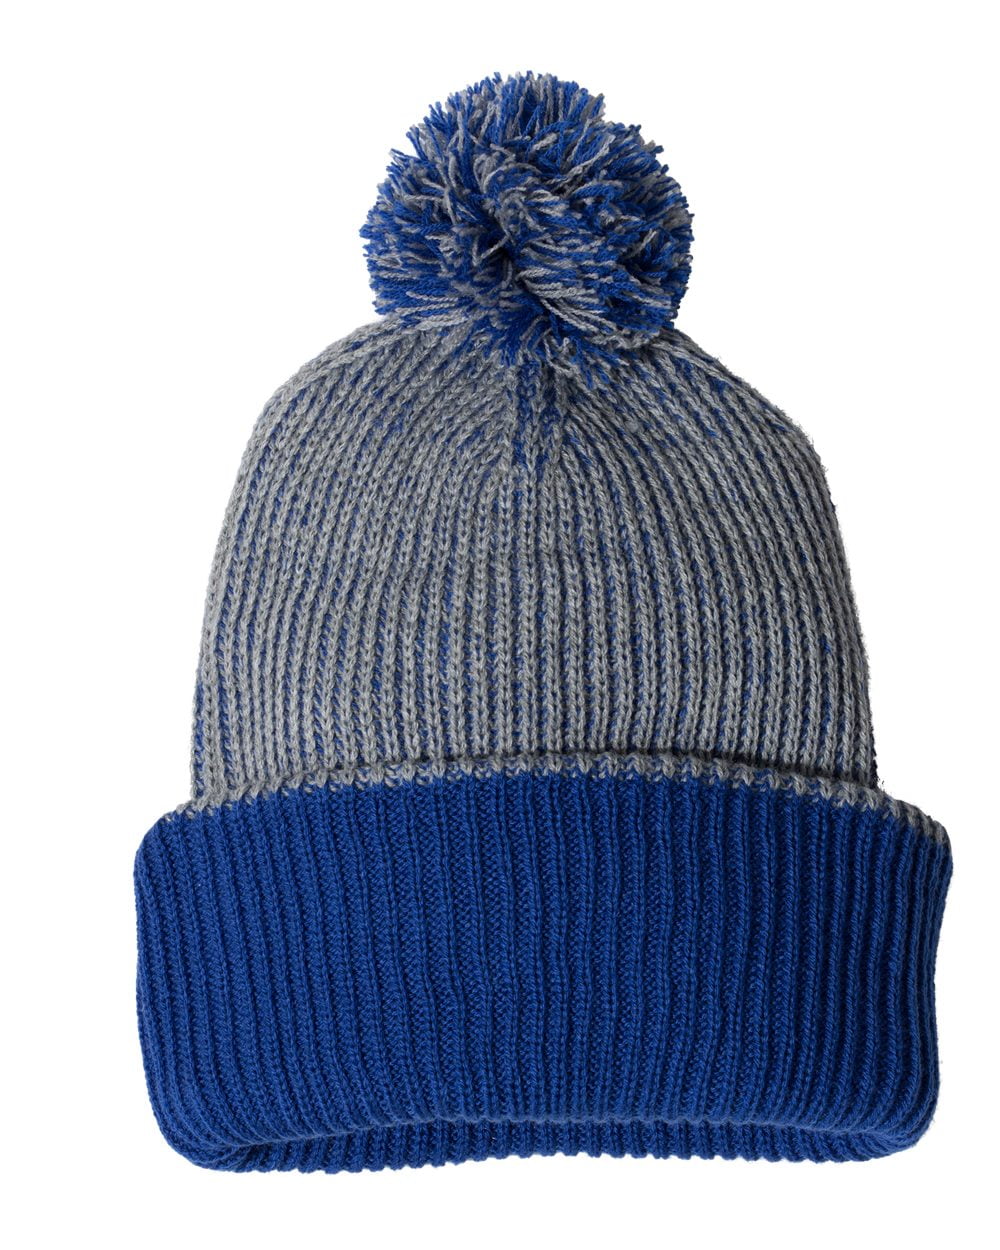 Bienzoe Girls Kids Winter Soft Warm Knit Fleece Lined Hat